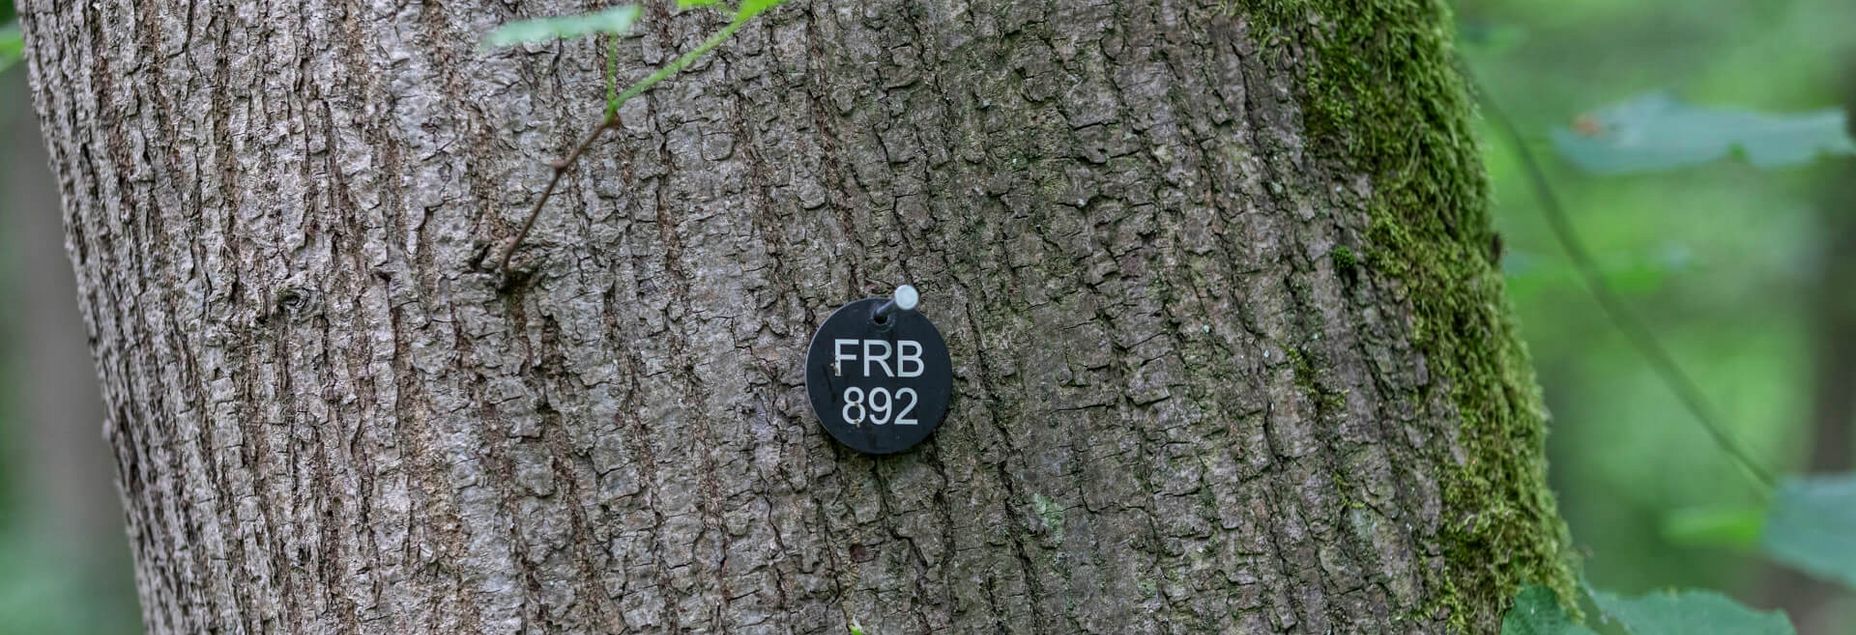 FRB 892 - Plakette